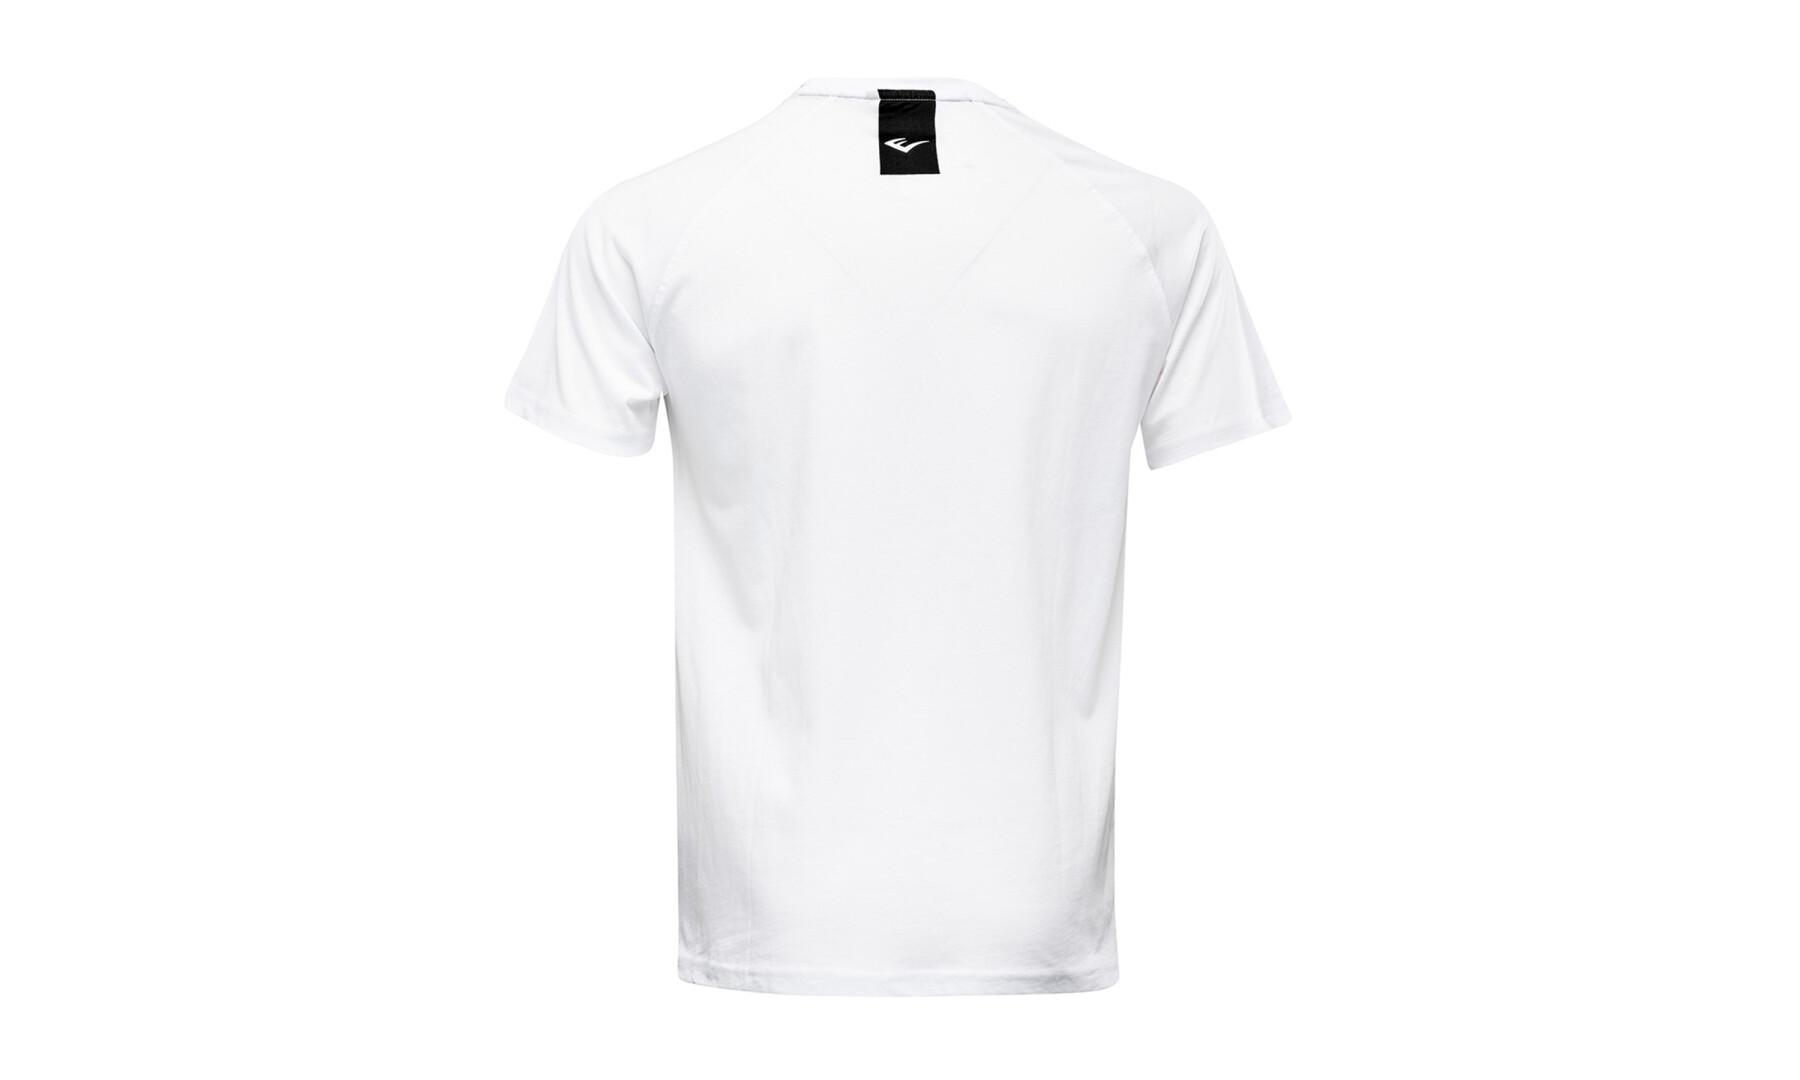 Kortärmad T-shirt Everlast russel